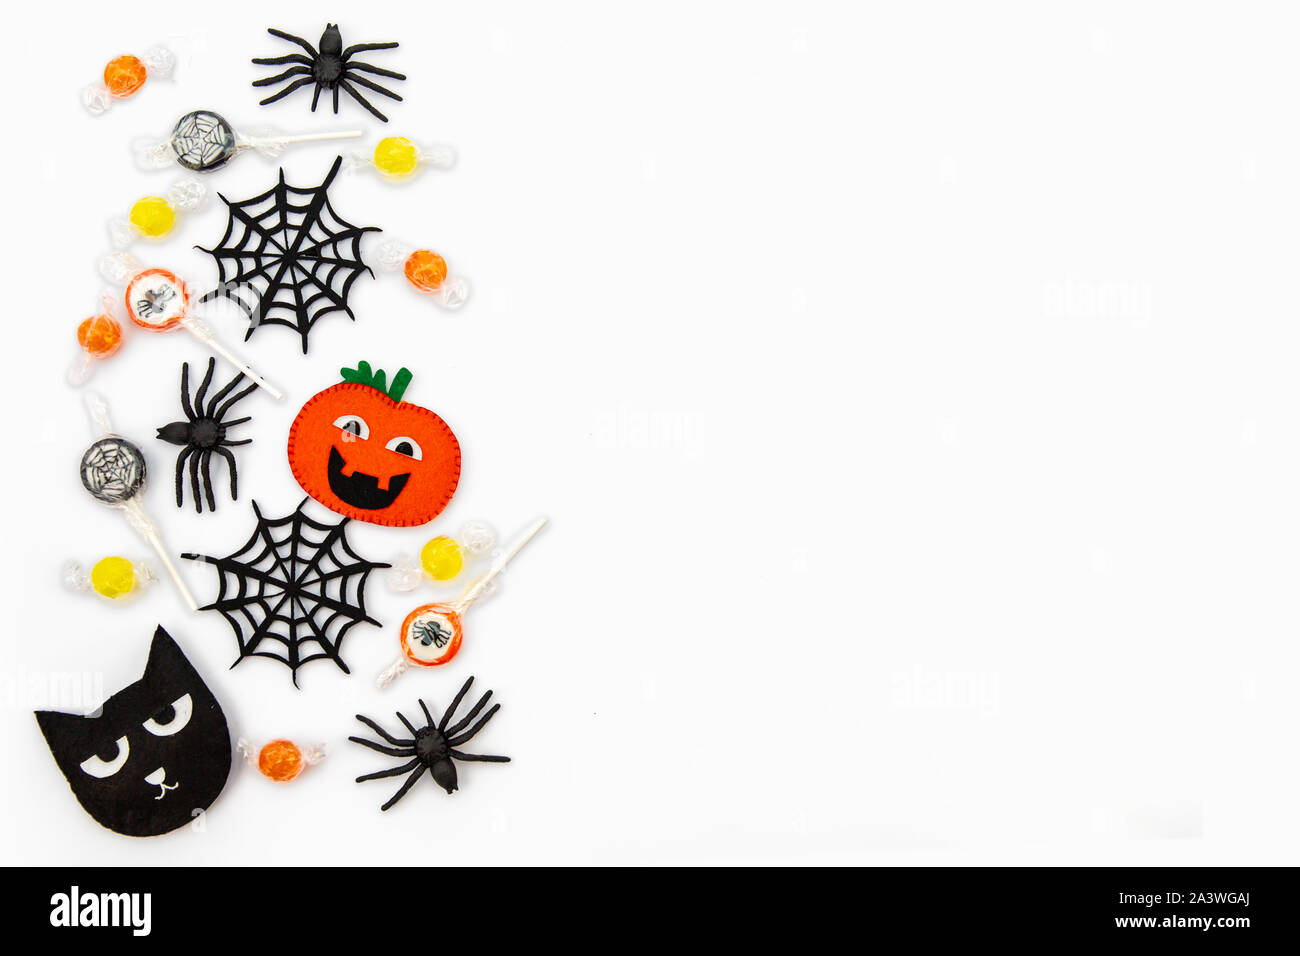 Arrière-plan de l'Halloween. Chocolats Orange, des toiles d'araignée, sucettes, cat, ghost, boo ! L'espace de copie. isolé sur fond blanc. Mise à plat, vue du dessus Banque D'Images